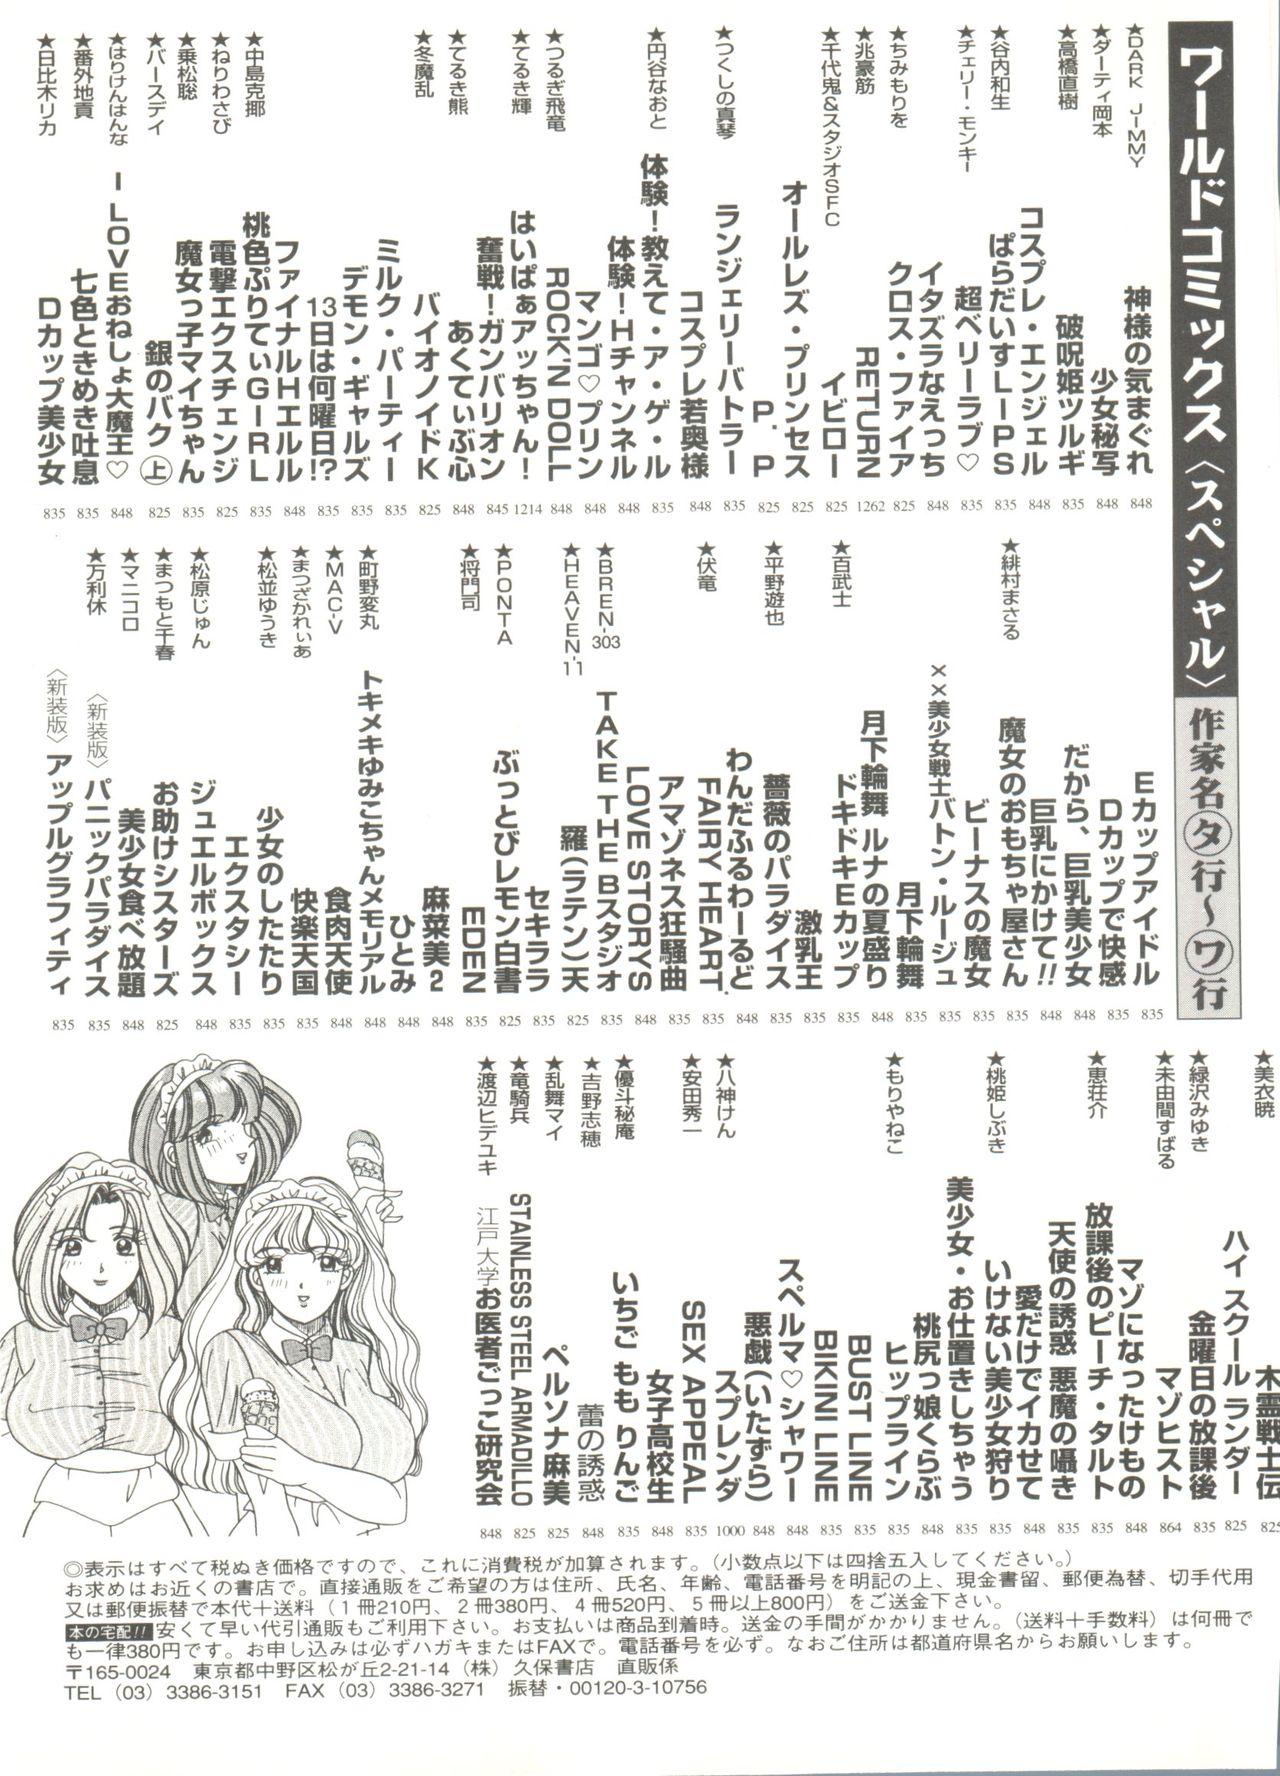 Doujin Anthology Bishoujo a La Carte 9 146